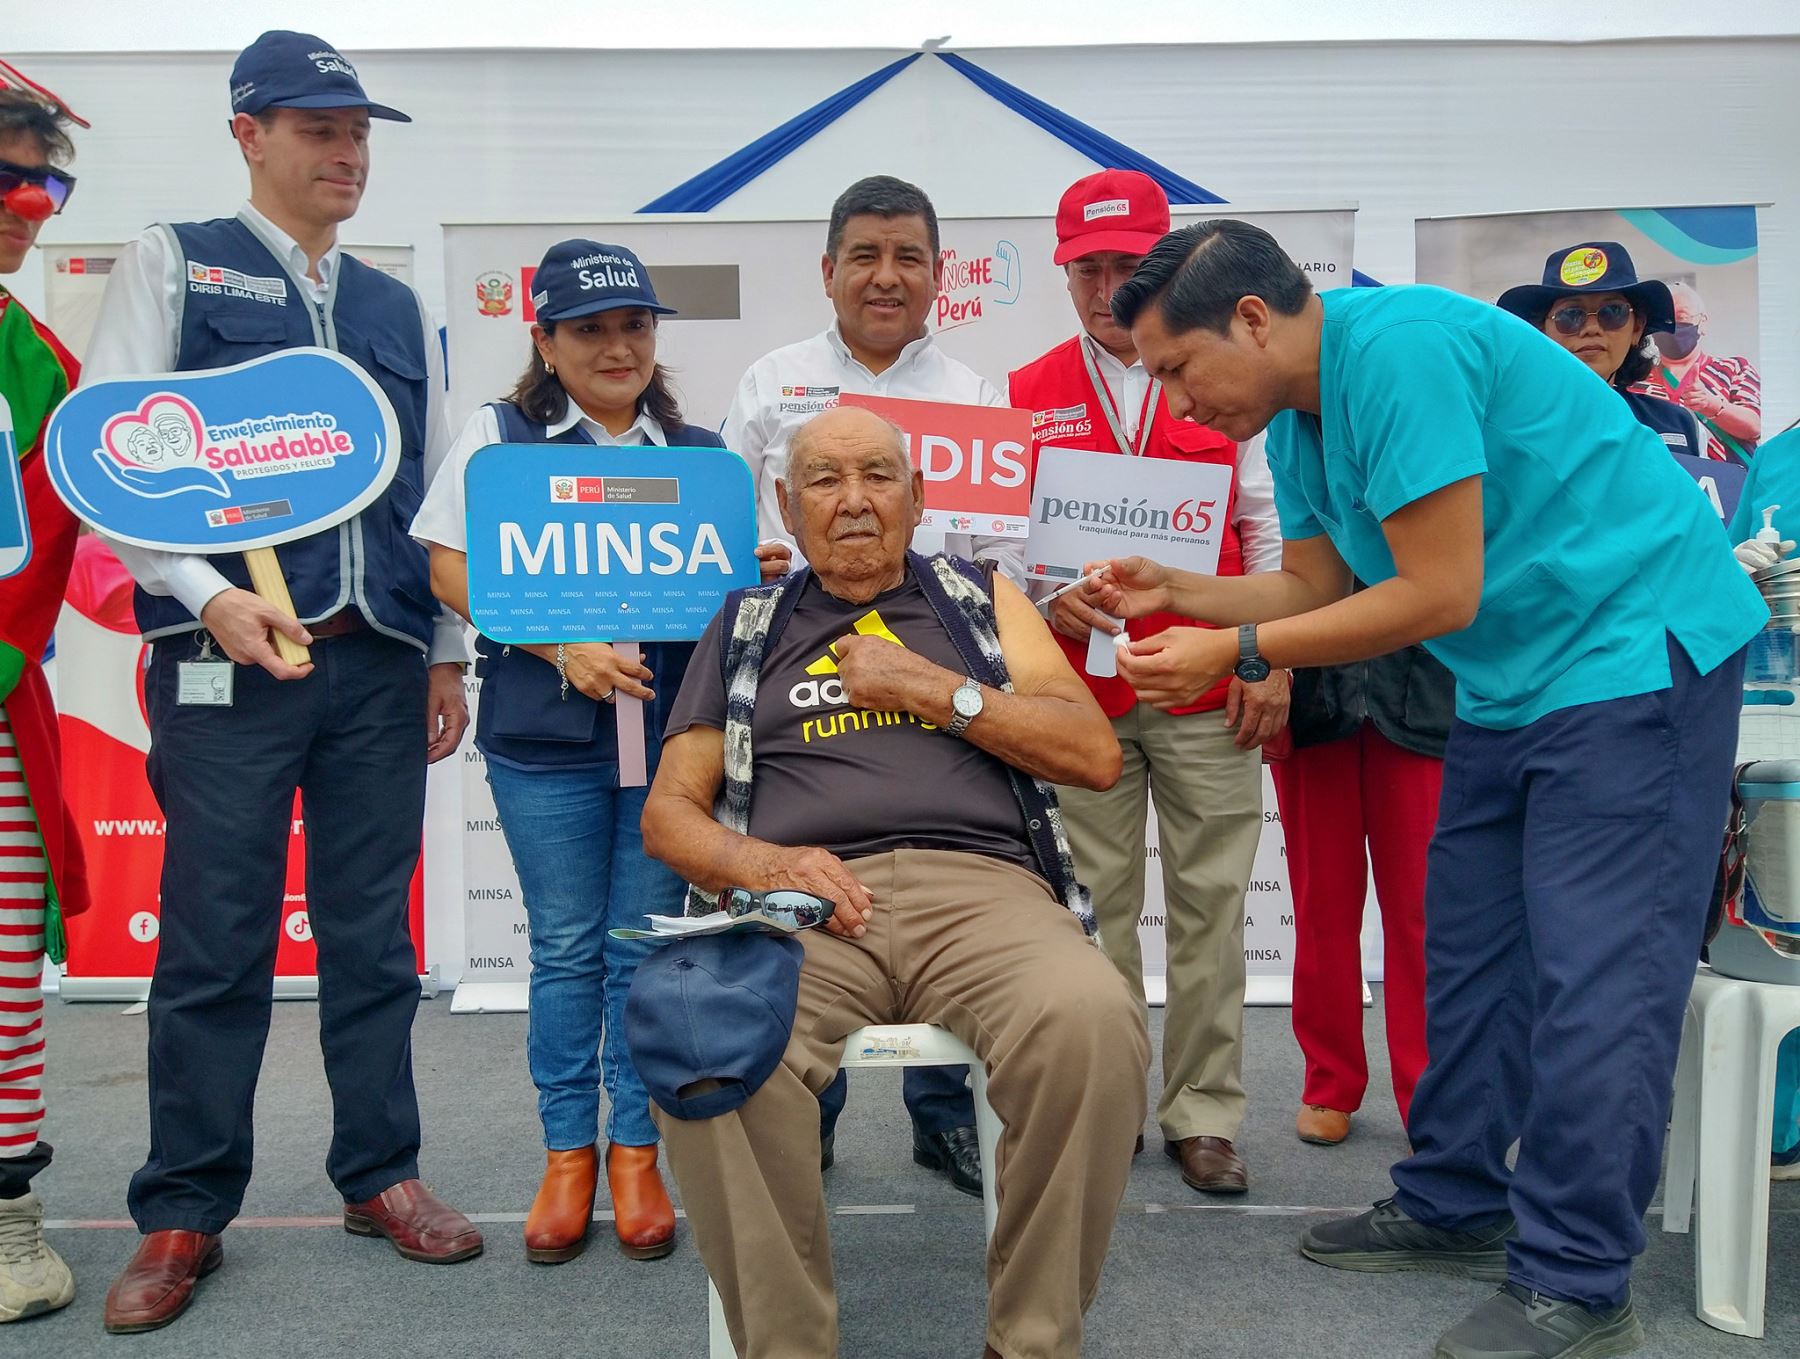 Ministerio de Salud promueve campaña integral  de salud dirigida a la población en general , con énfasis en adultos mayores en Huaycán. Se brindaron los servicios de vacunación contra la covid-19 y esquema regular, descarte de cáncer de piel, colon, VIH, prevención de dengue, entre otros
Foto: Minsa